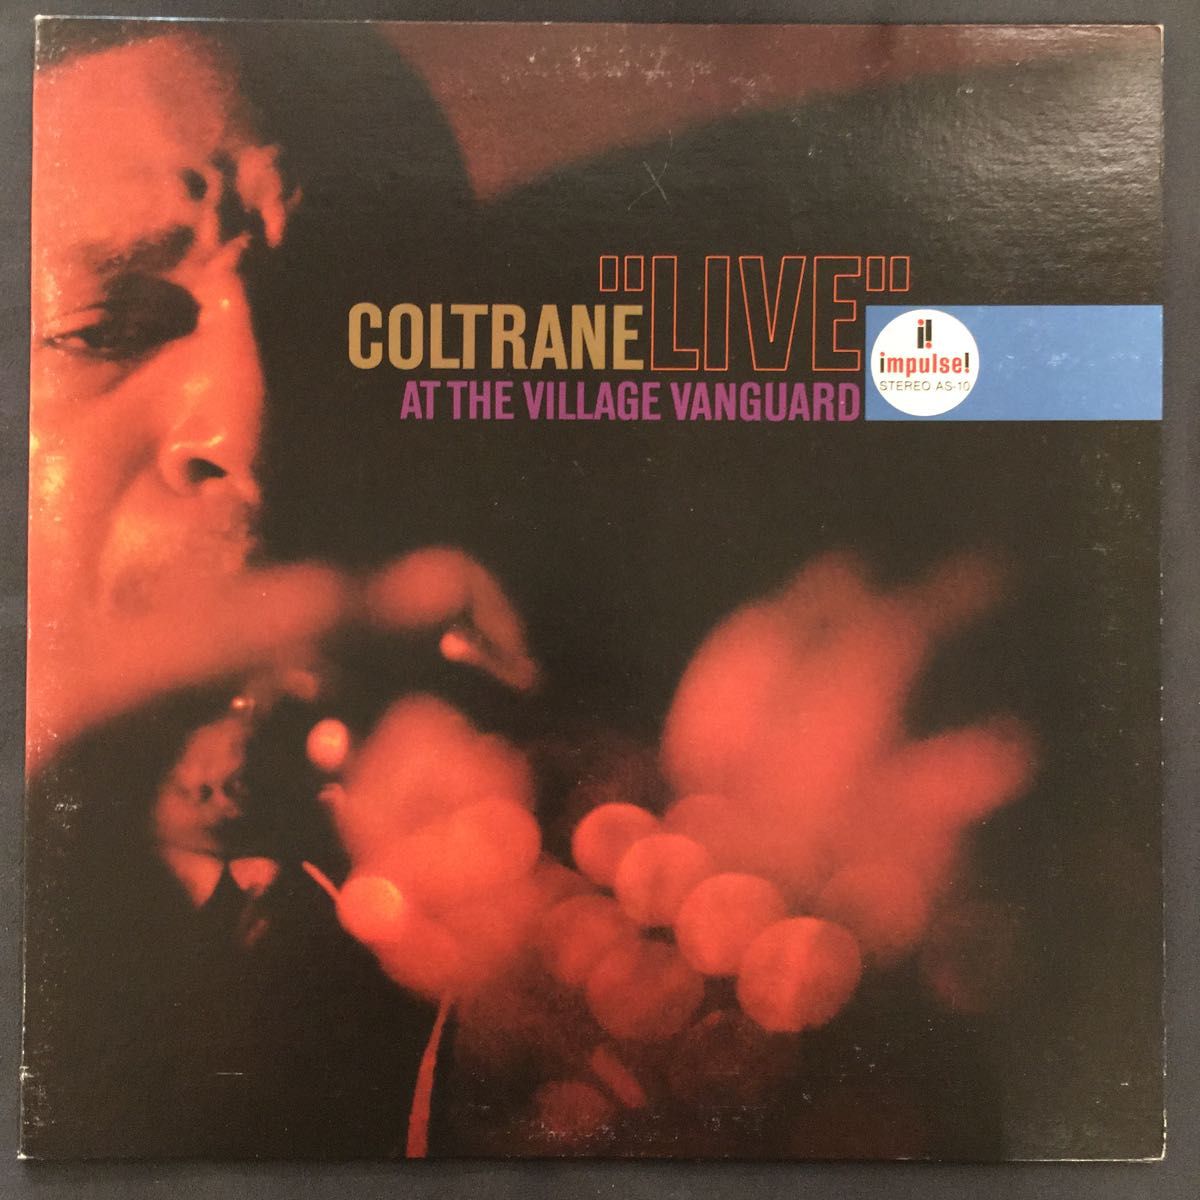  COLTRANE "LIVE" at The Village Vanguard アナログLPレコード コルトレーン STEREO